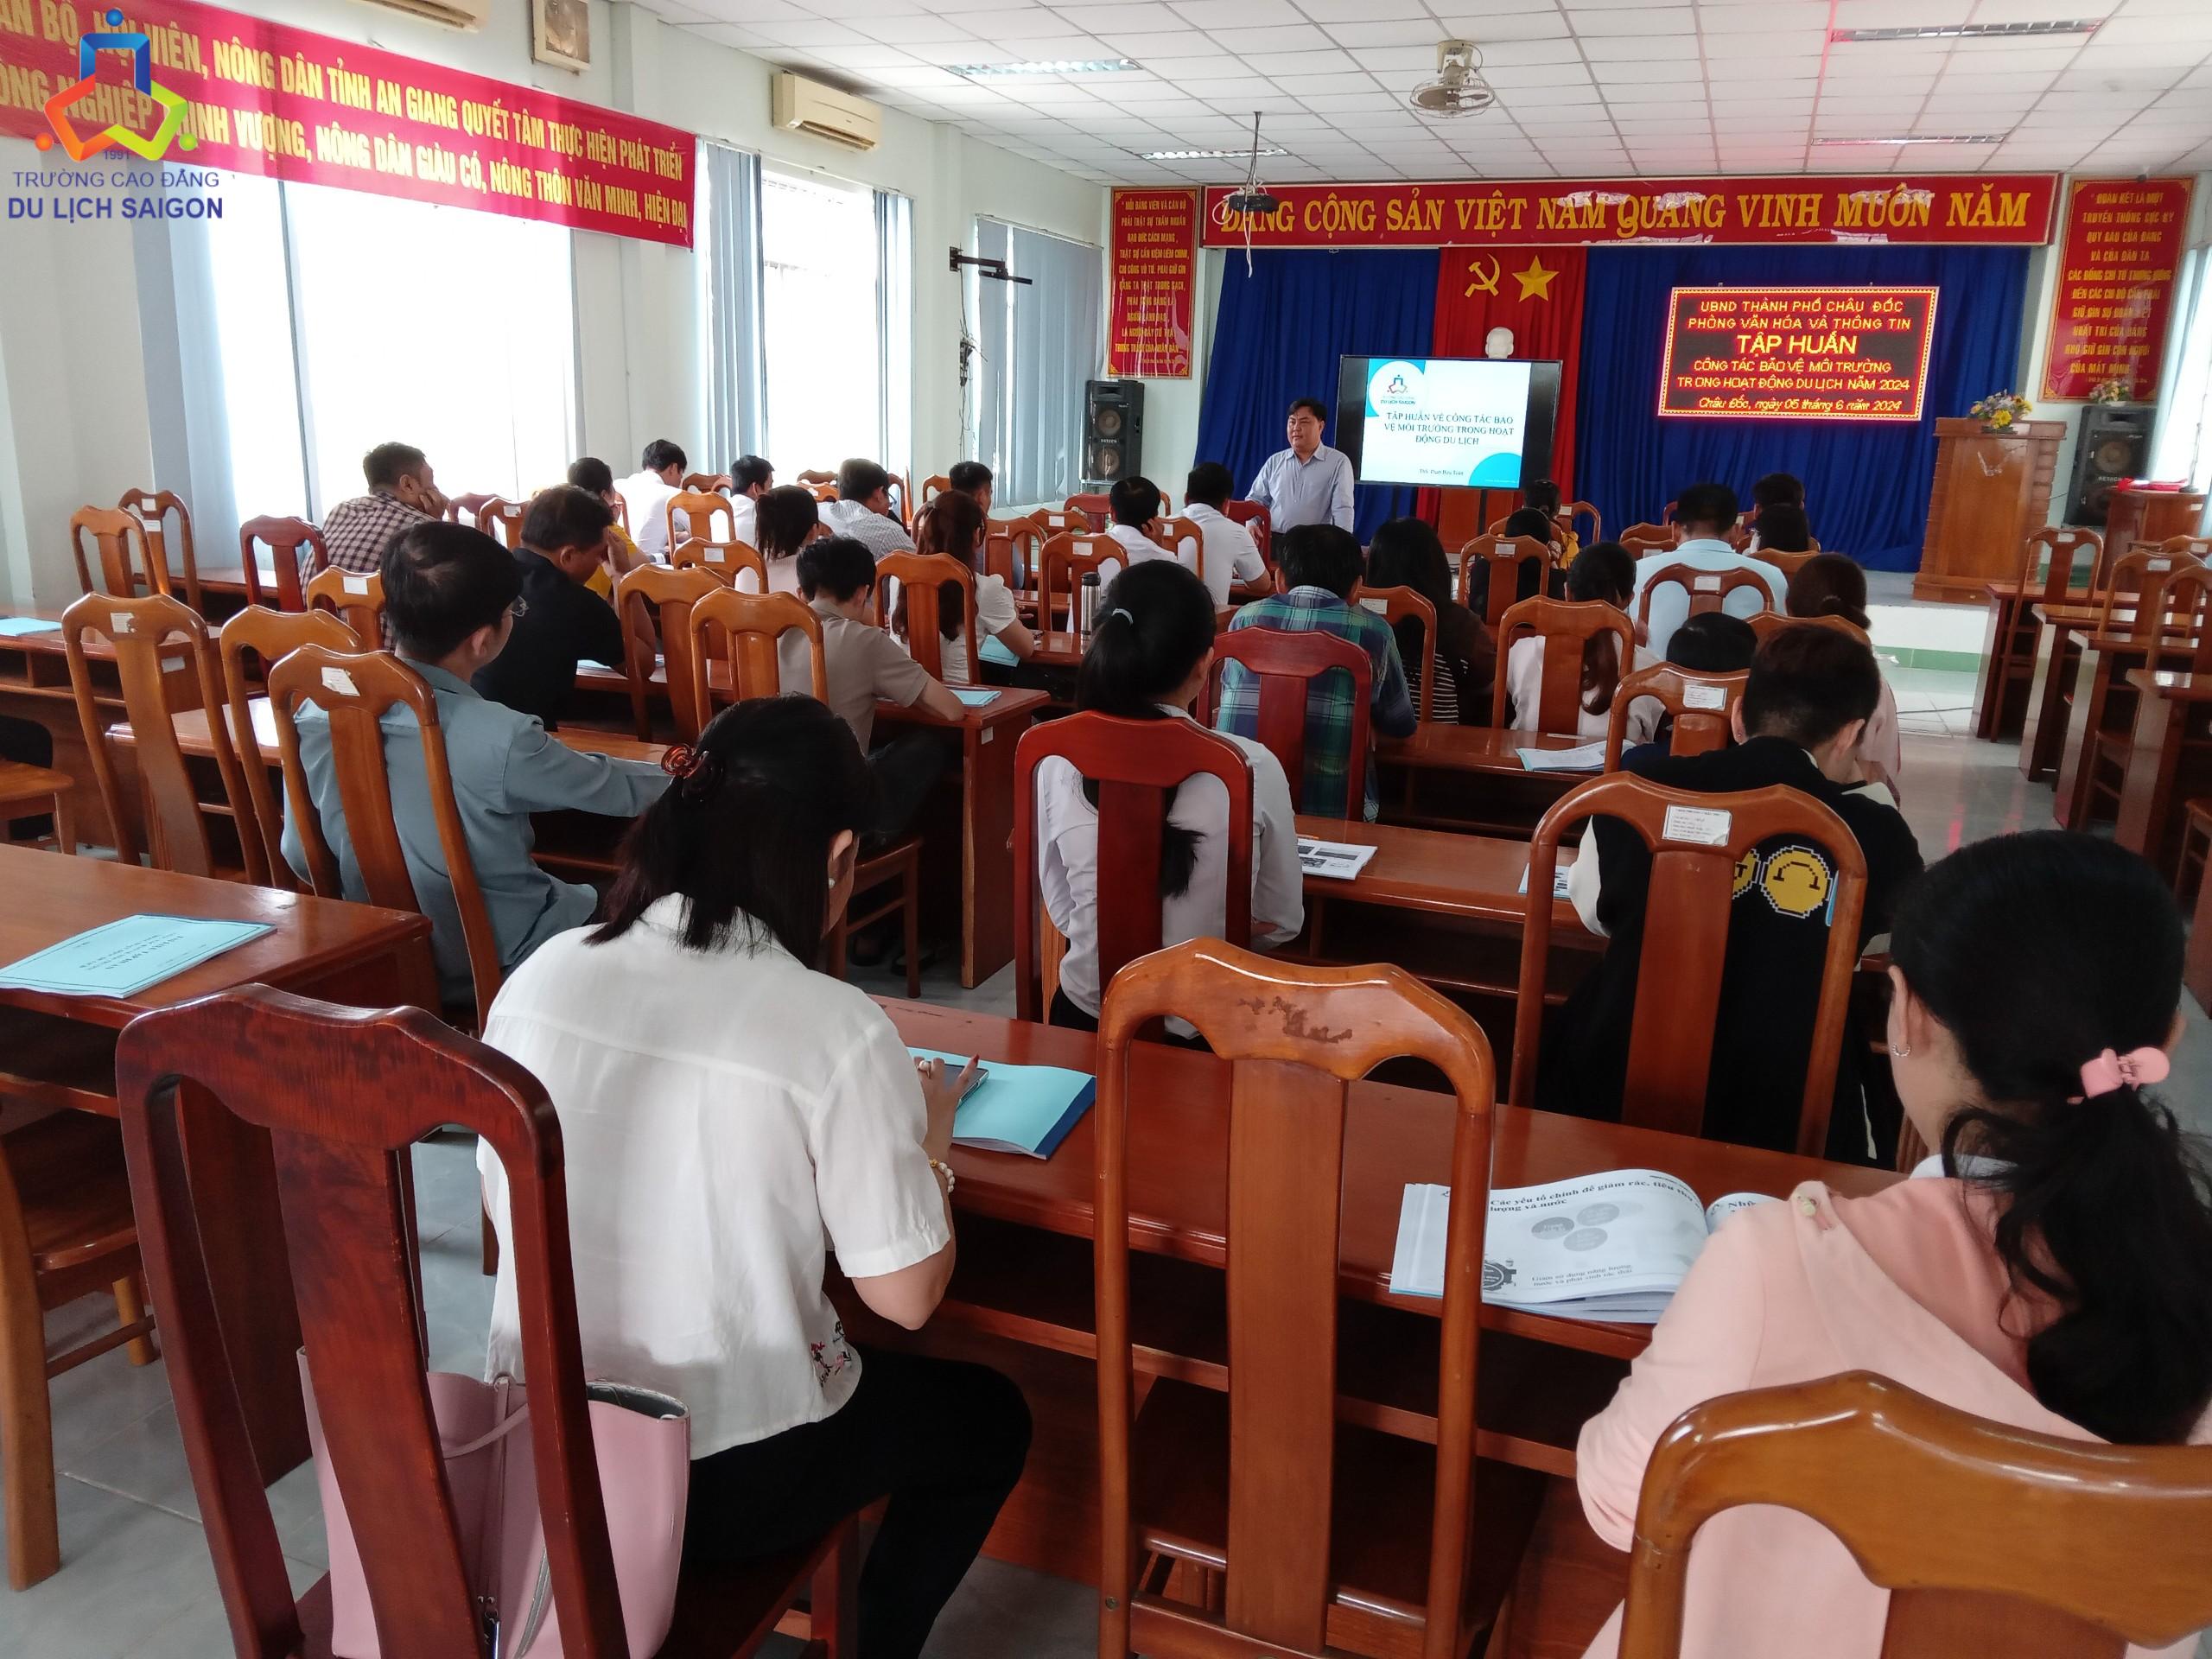 Một số hình ảnh của giảng viên Cao đẳng Du lịch Sài Gòn và học viên của Lớp Tập huấn Bảo vệ Môi trường trong hoạt động Du lịch.